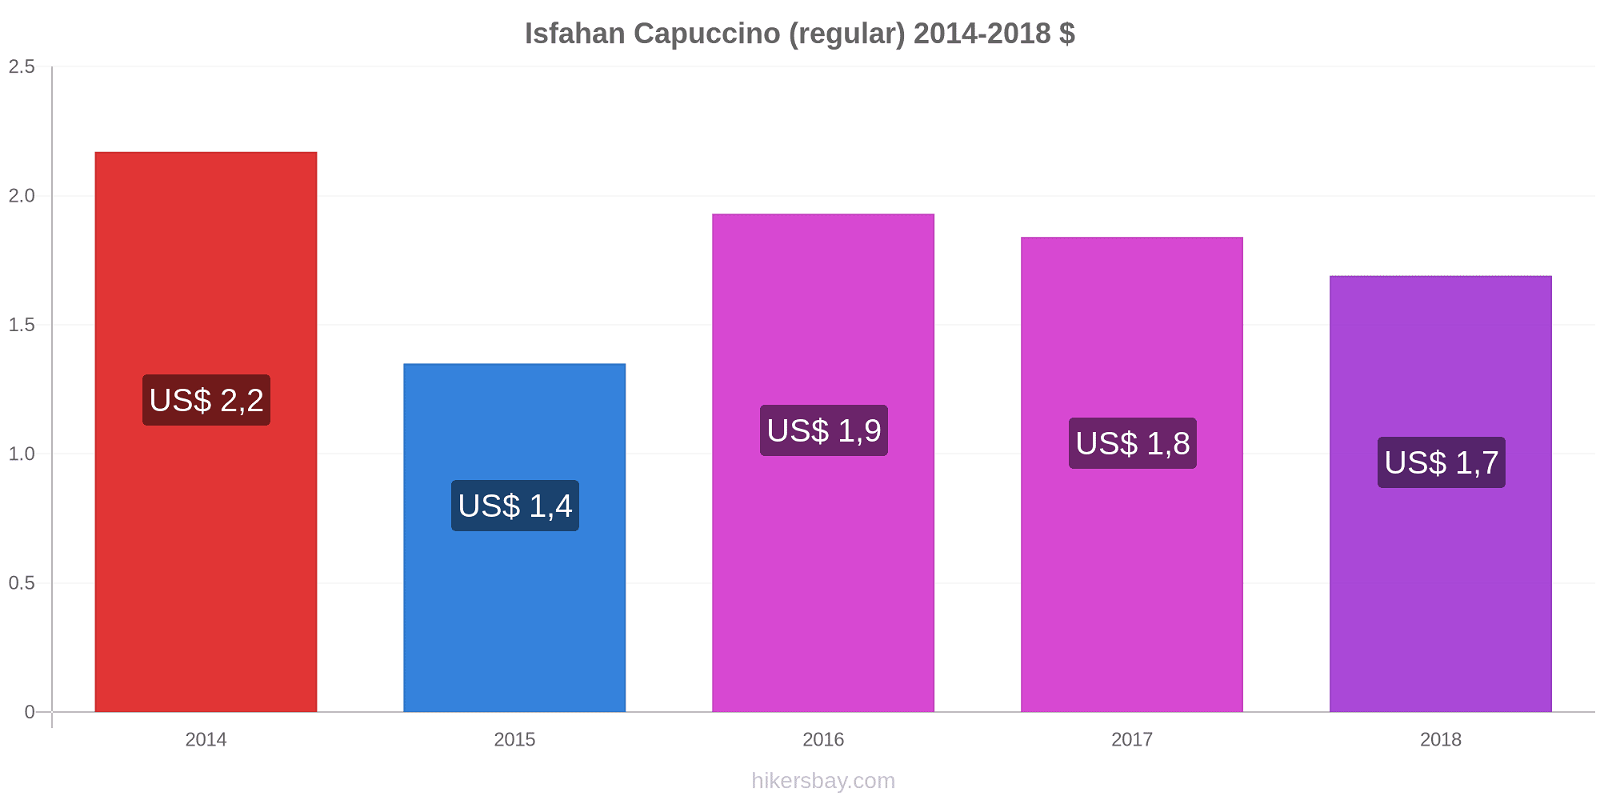 Isfahan variação de preço Capuccino (regular) hikersbay.com